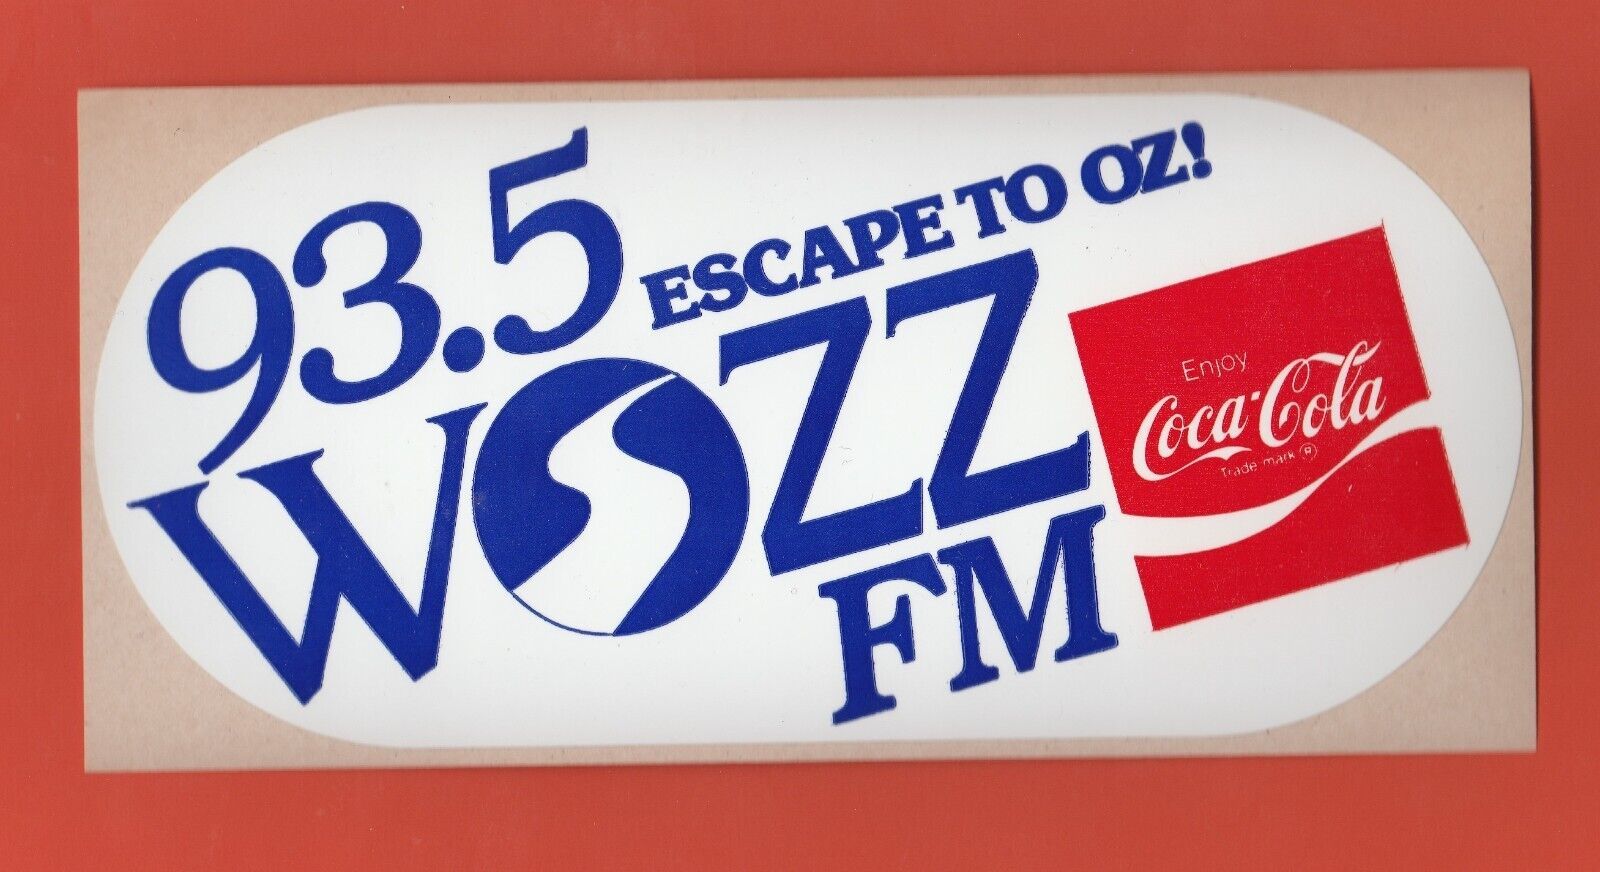 1990 93.5 ESCAPE TO OZ WQZZ FM RADIO STATION BUMPER STICKER COCA COLA - $8.27